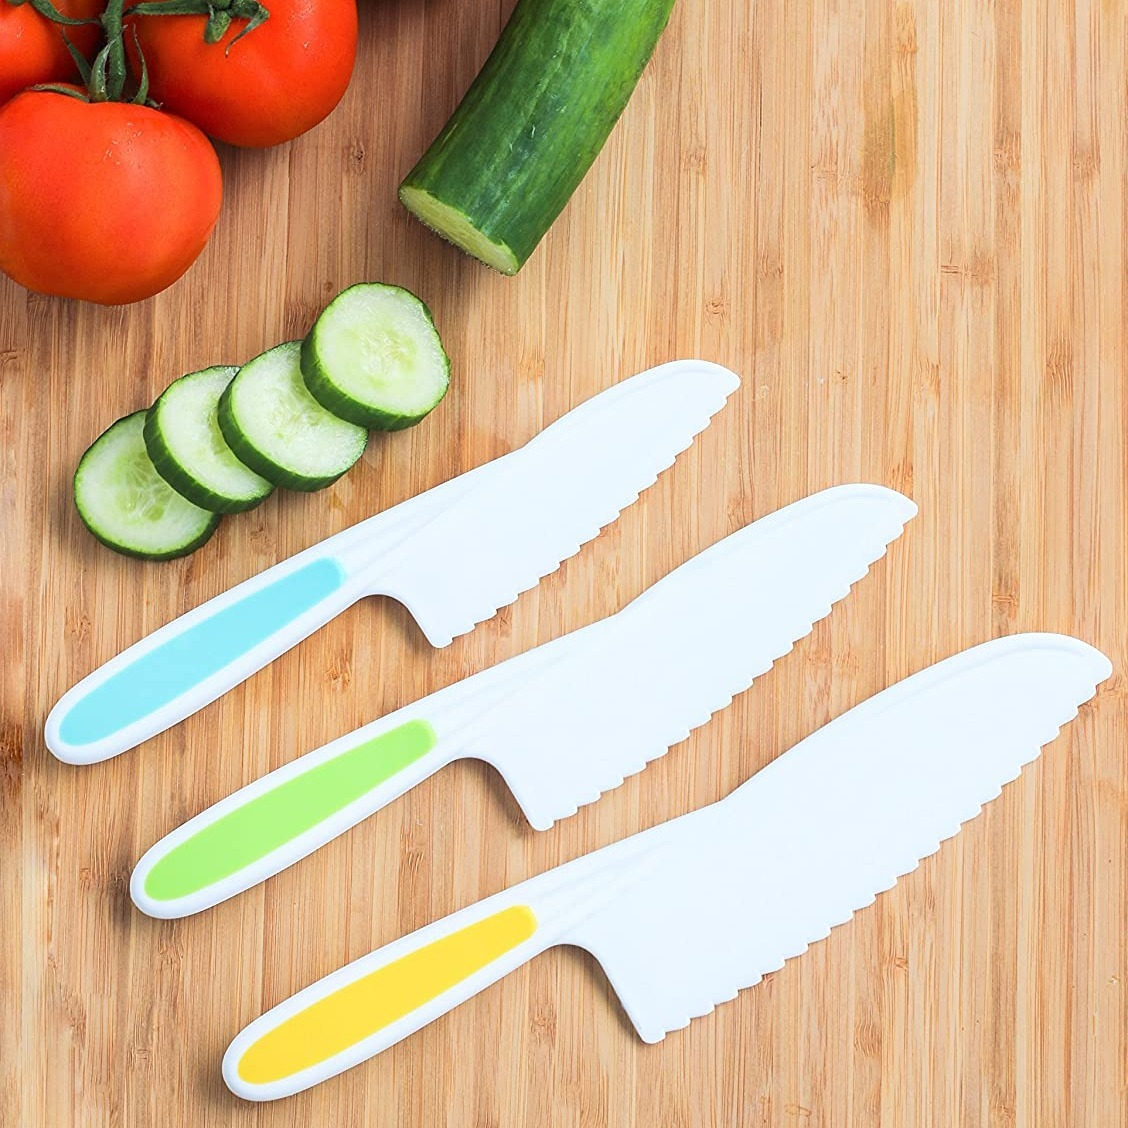 4 Pcs Kids Knife Set, Kids Safe Cooking Knives, Nylon Kids Kitchen Knife  With Crinkle Cutter, Serrated Edges Plastic Toddler Knife Kids Knives For  Rea